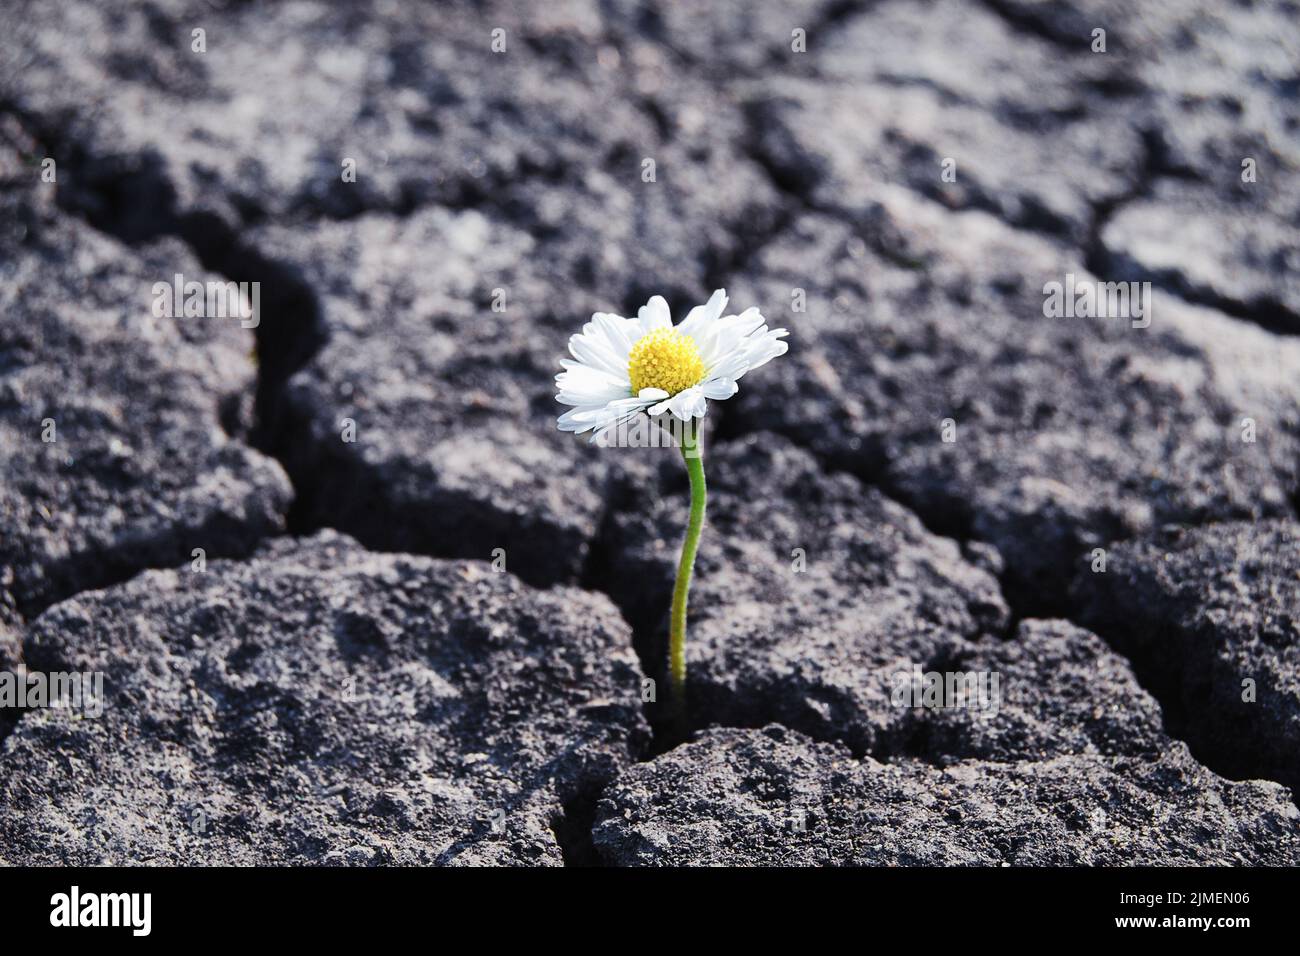 Flower has grown in arid cracked barren soil Stock Photo